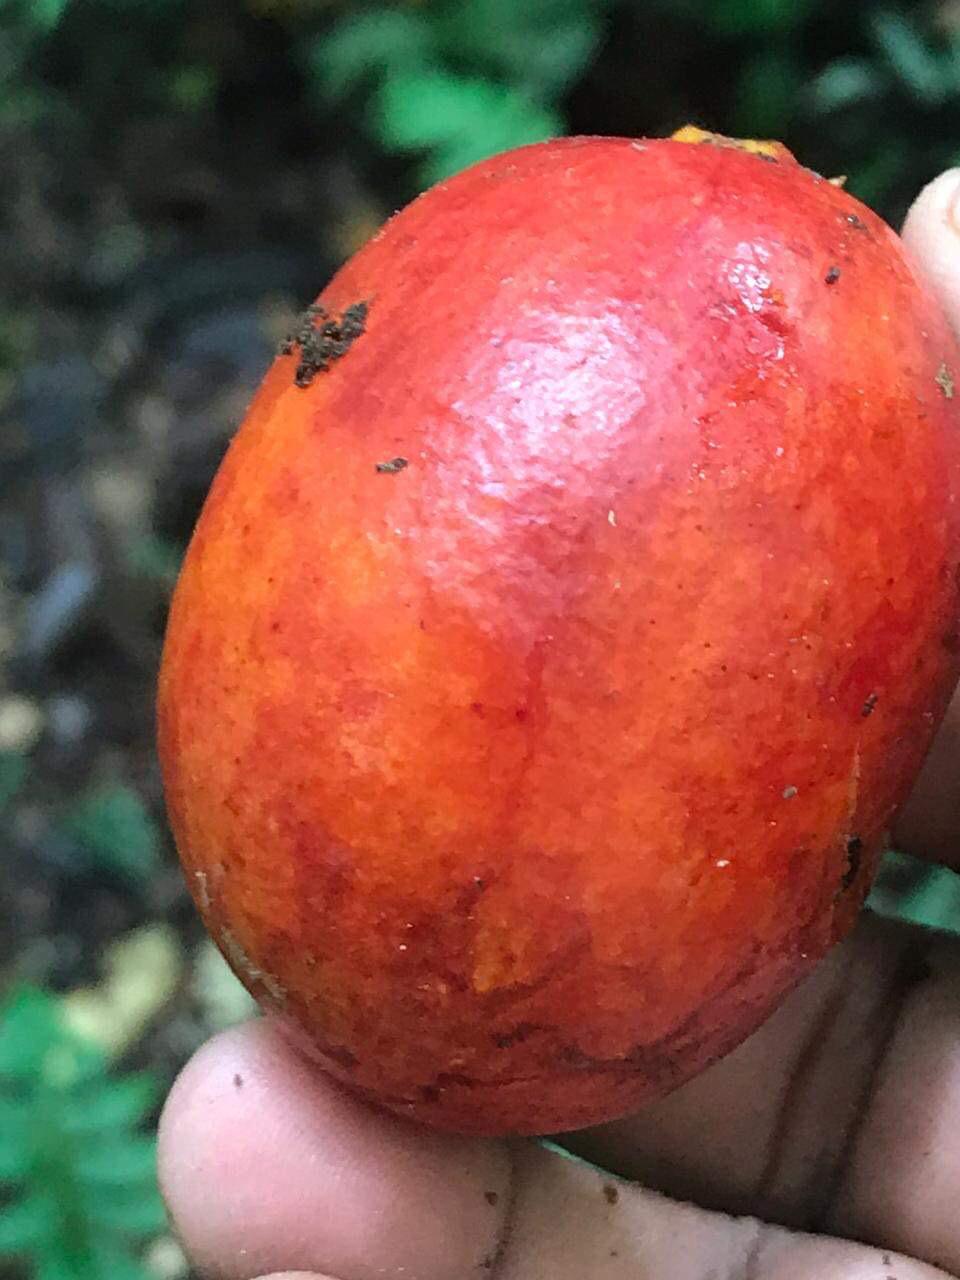 Onychopetalum periquino "Vermelha Gigante / Giant Red" (Envira Caju) Seeds